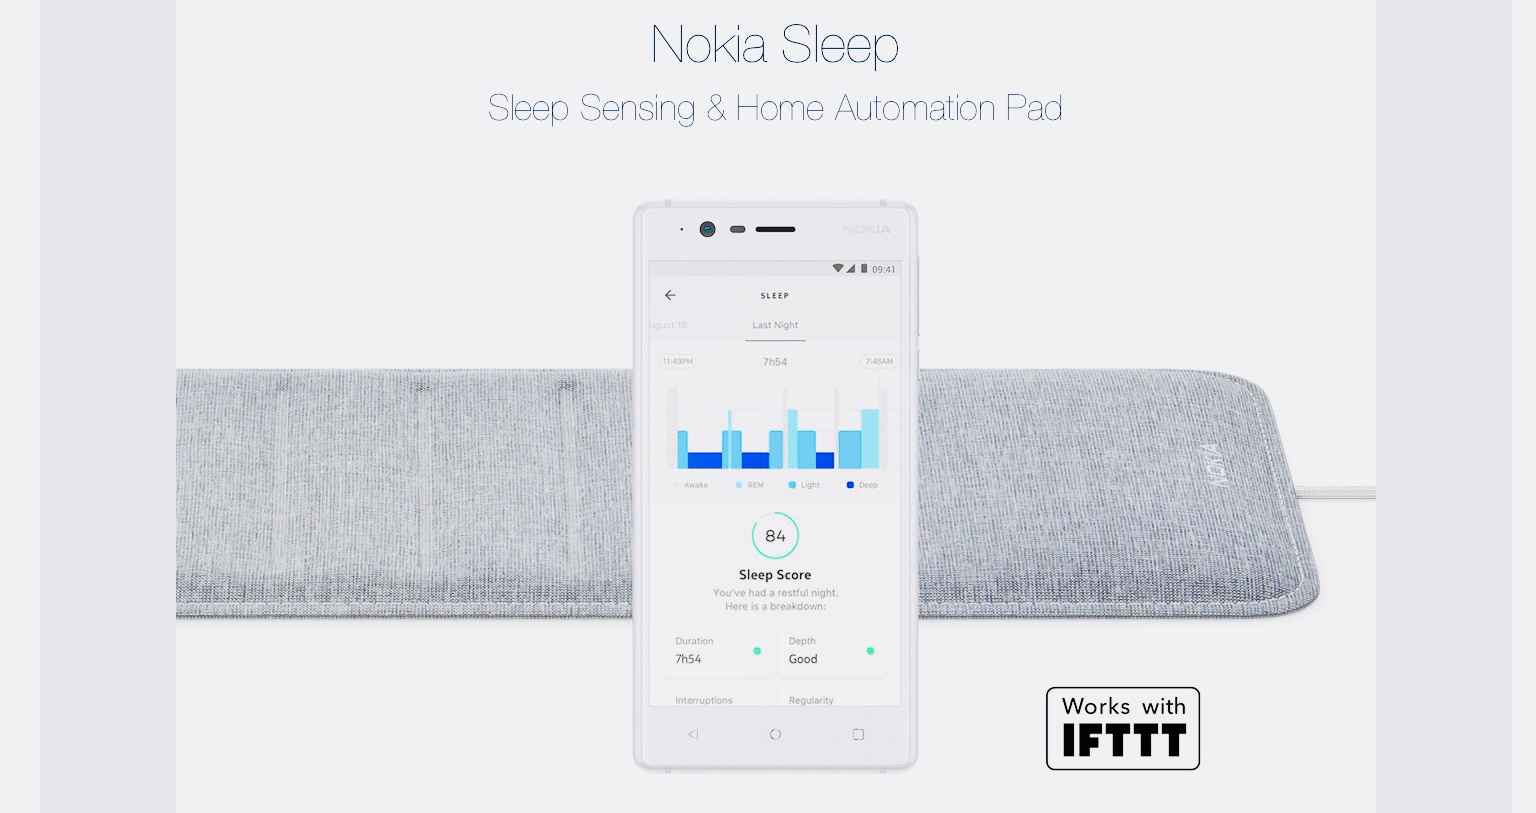 Коврик Nokia Sleep улучшит ваш сон за 8 дней